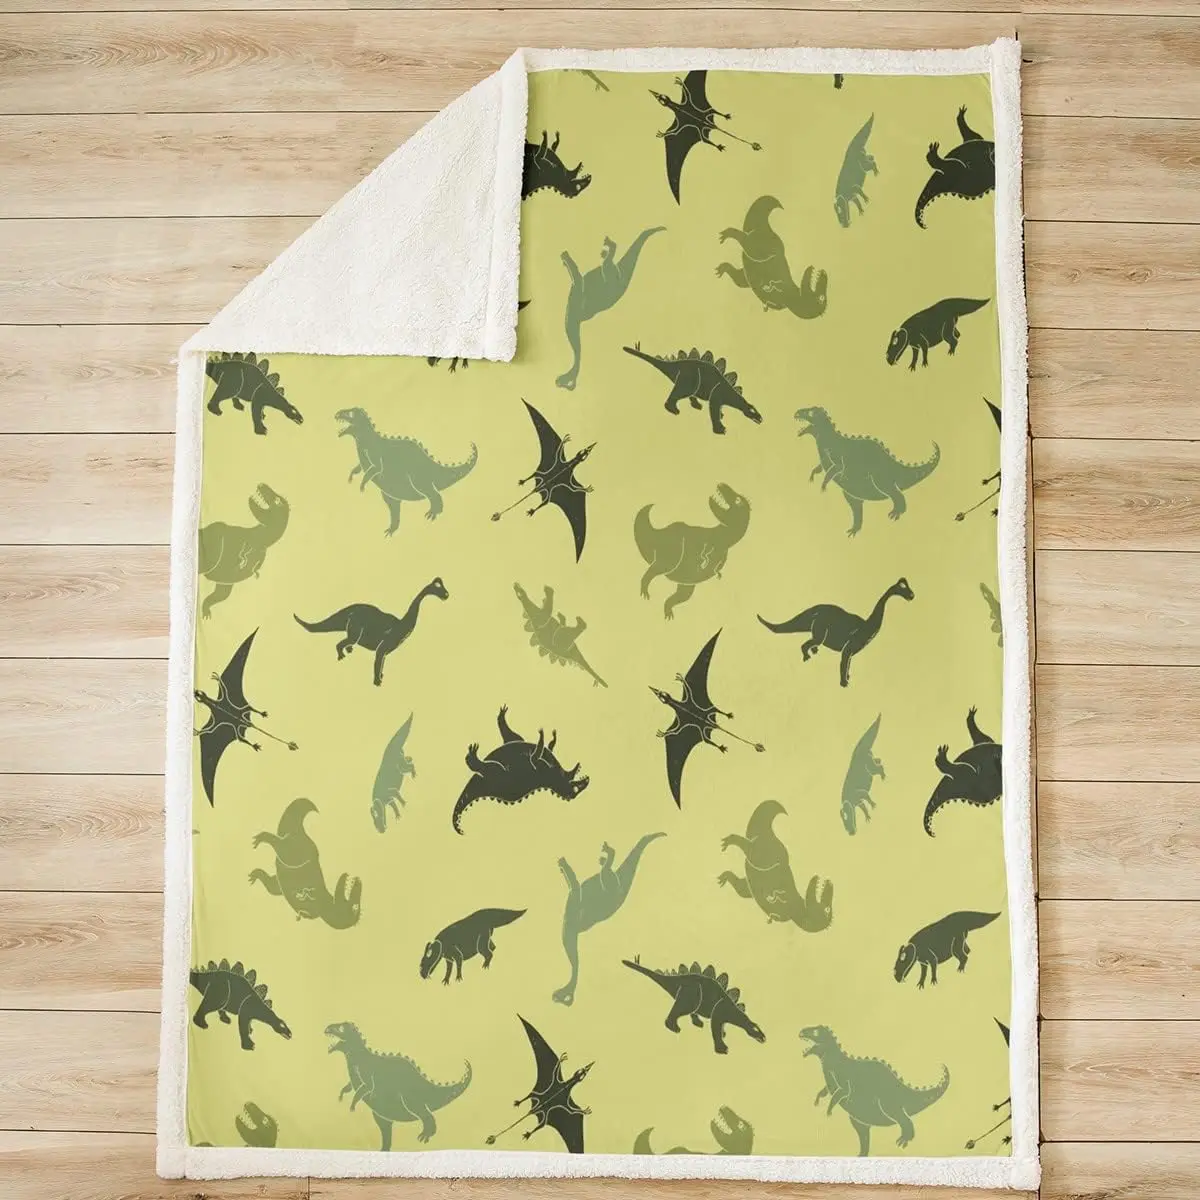 Camo Dinosaur Throw Blanket Армейское зеленое камуфляжное одеяло для кровати для детей, мальчиков, подростков, декор комнаты, дикие животные, флисовое одеяло - 1